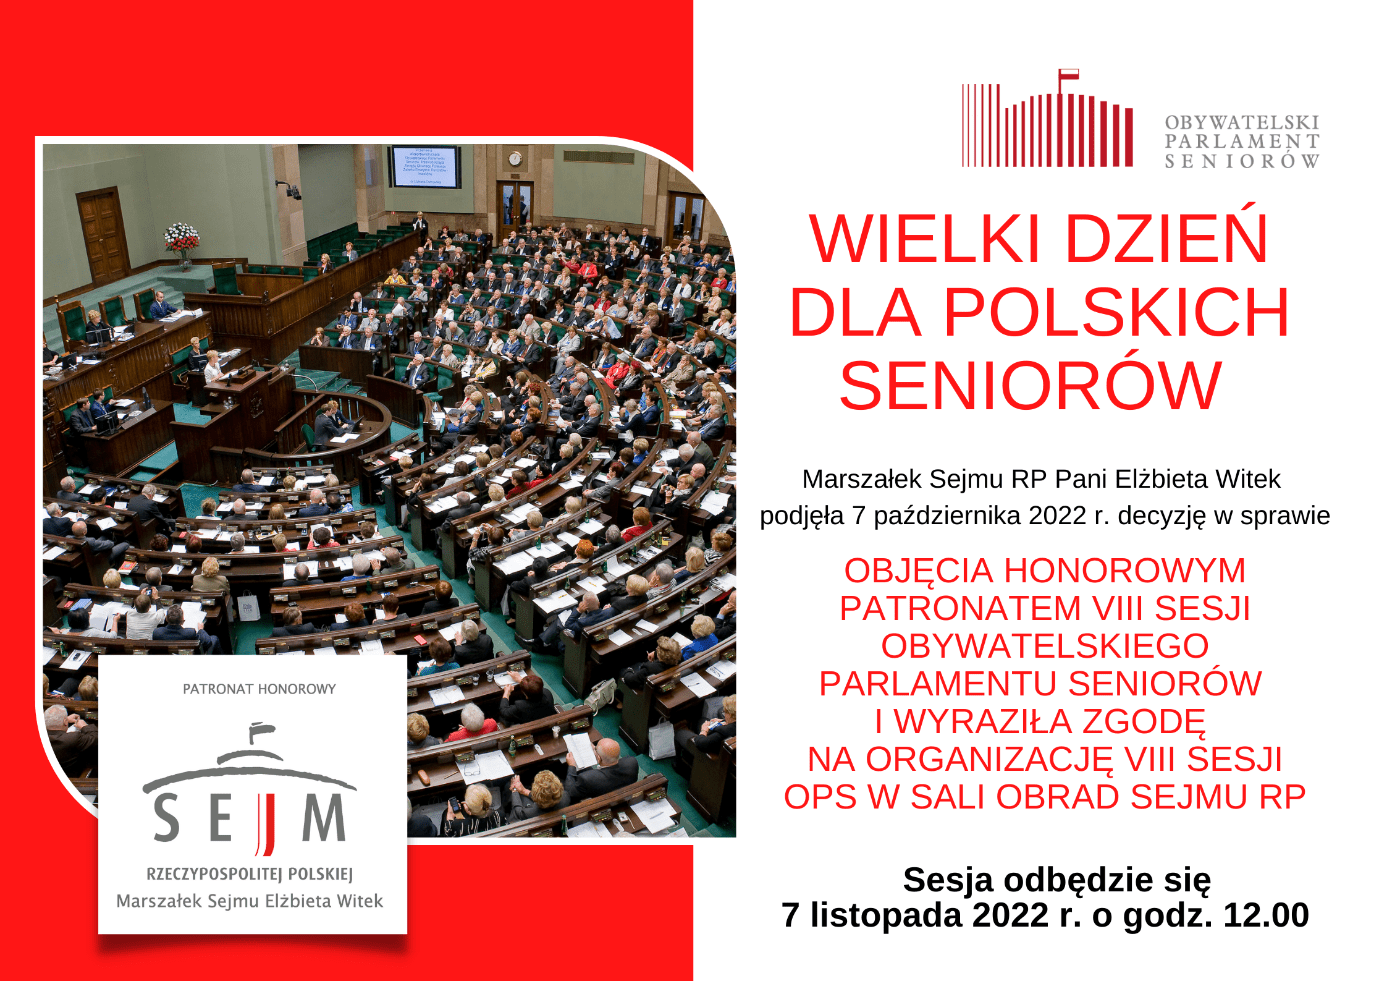 wielki dzien dla polskich seniorow - VIII Sesja Obywatelskiego Parlamentu Seniorów już 7 listopada o godzinie 12:00